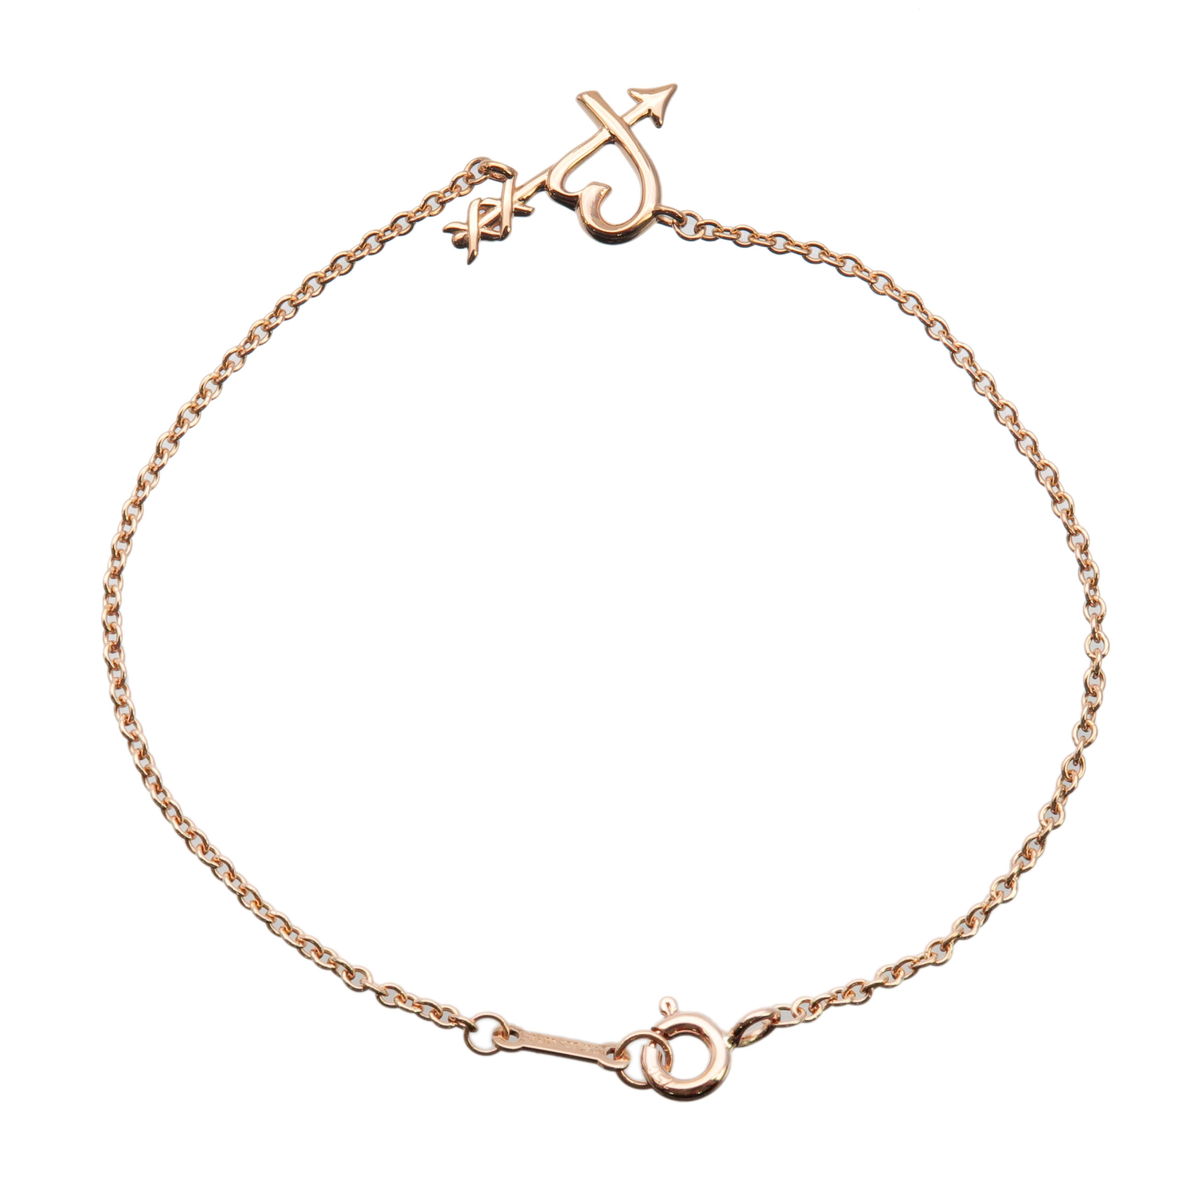 Tiffany&Co. Heart & Arrow Bracelet K18PG 750PG Rose Gold